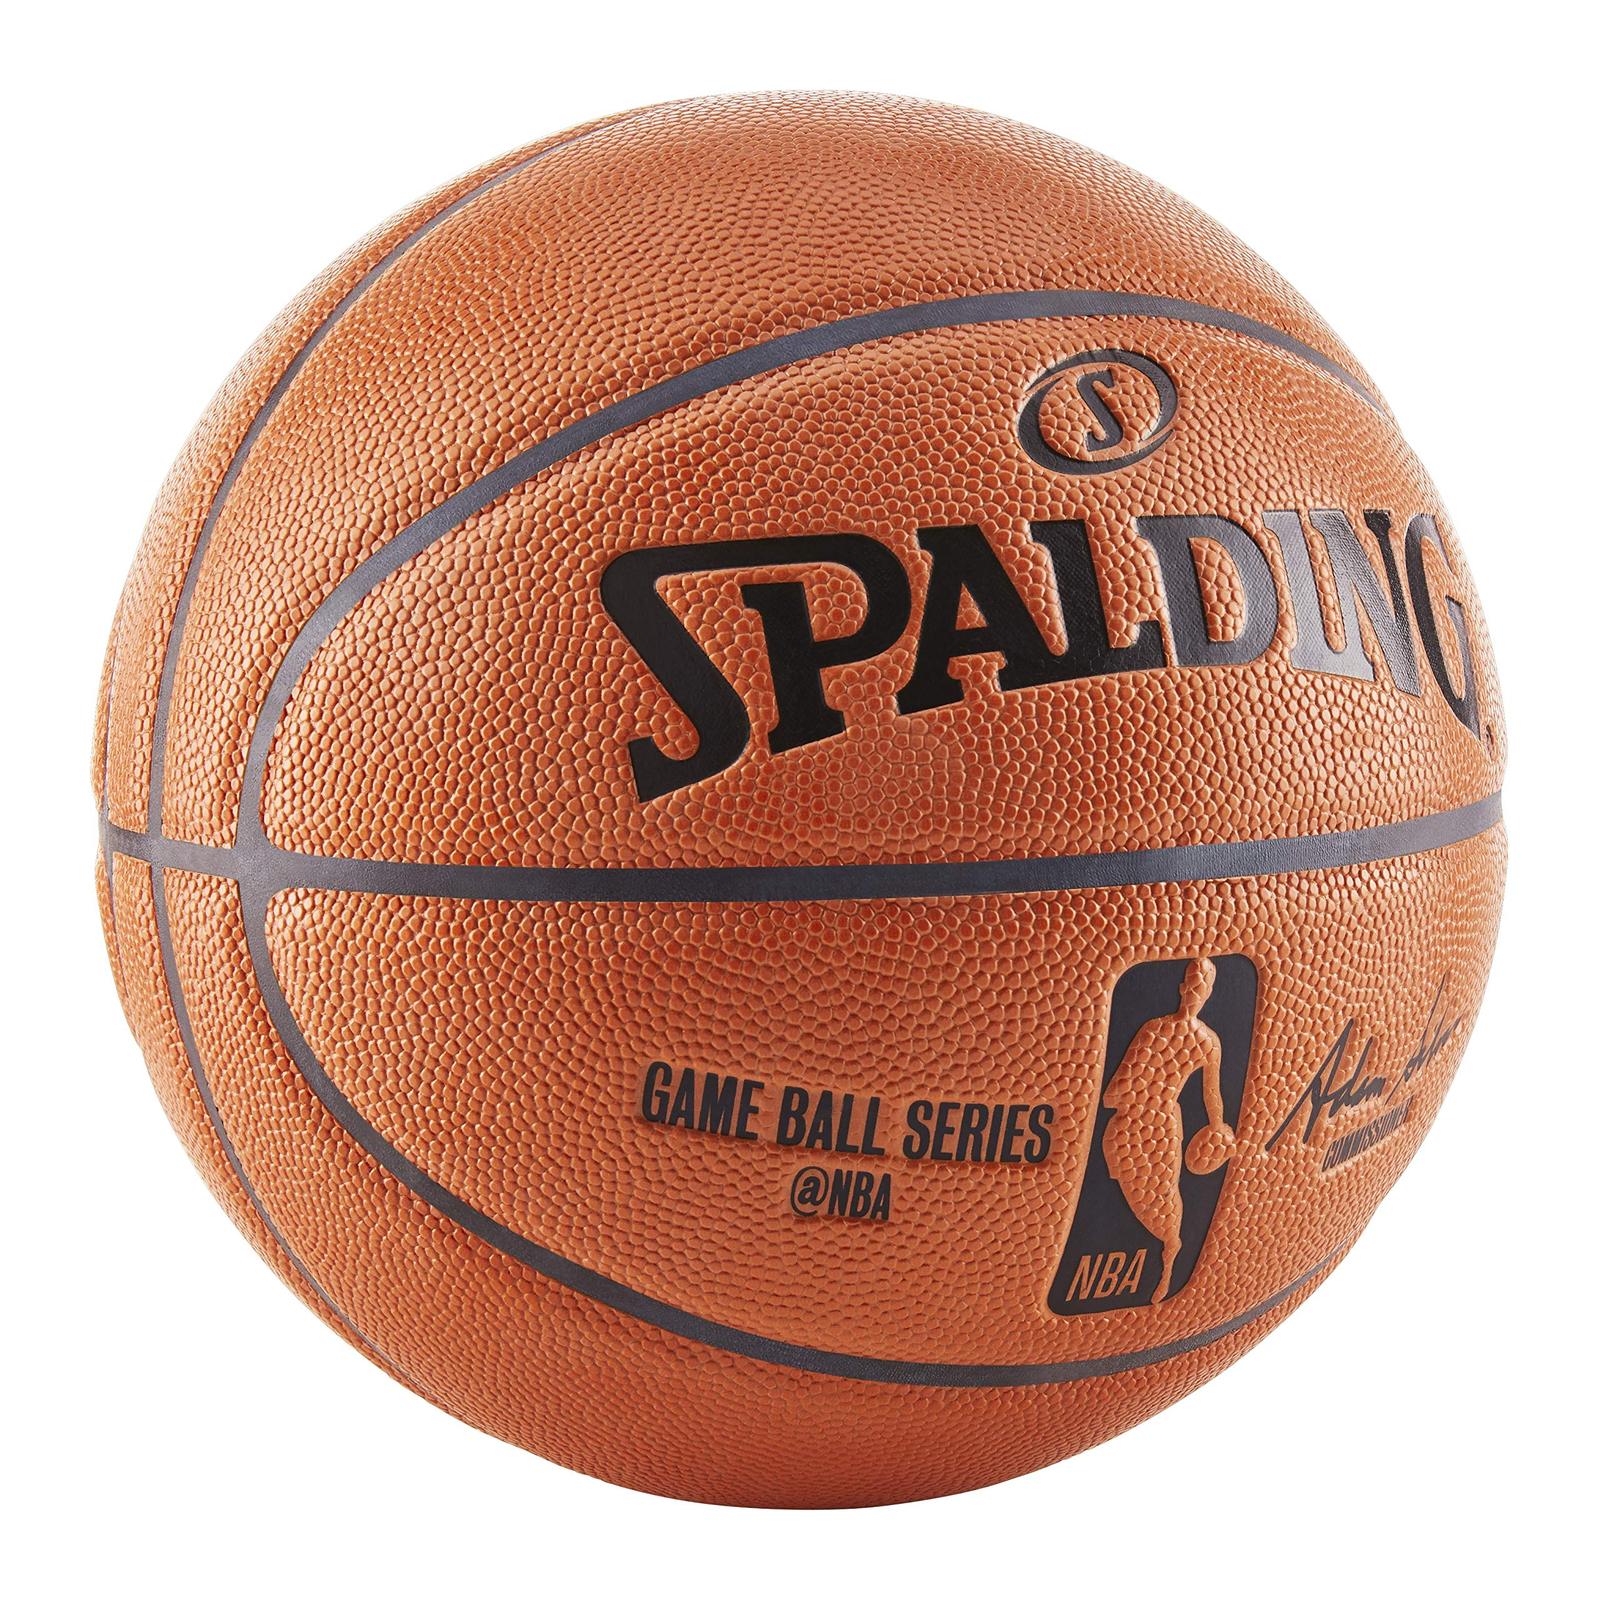 nba official replica game ball